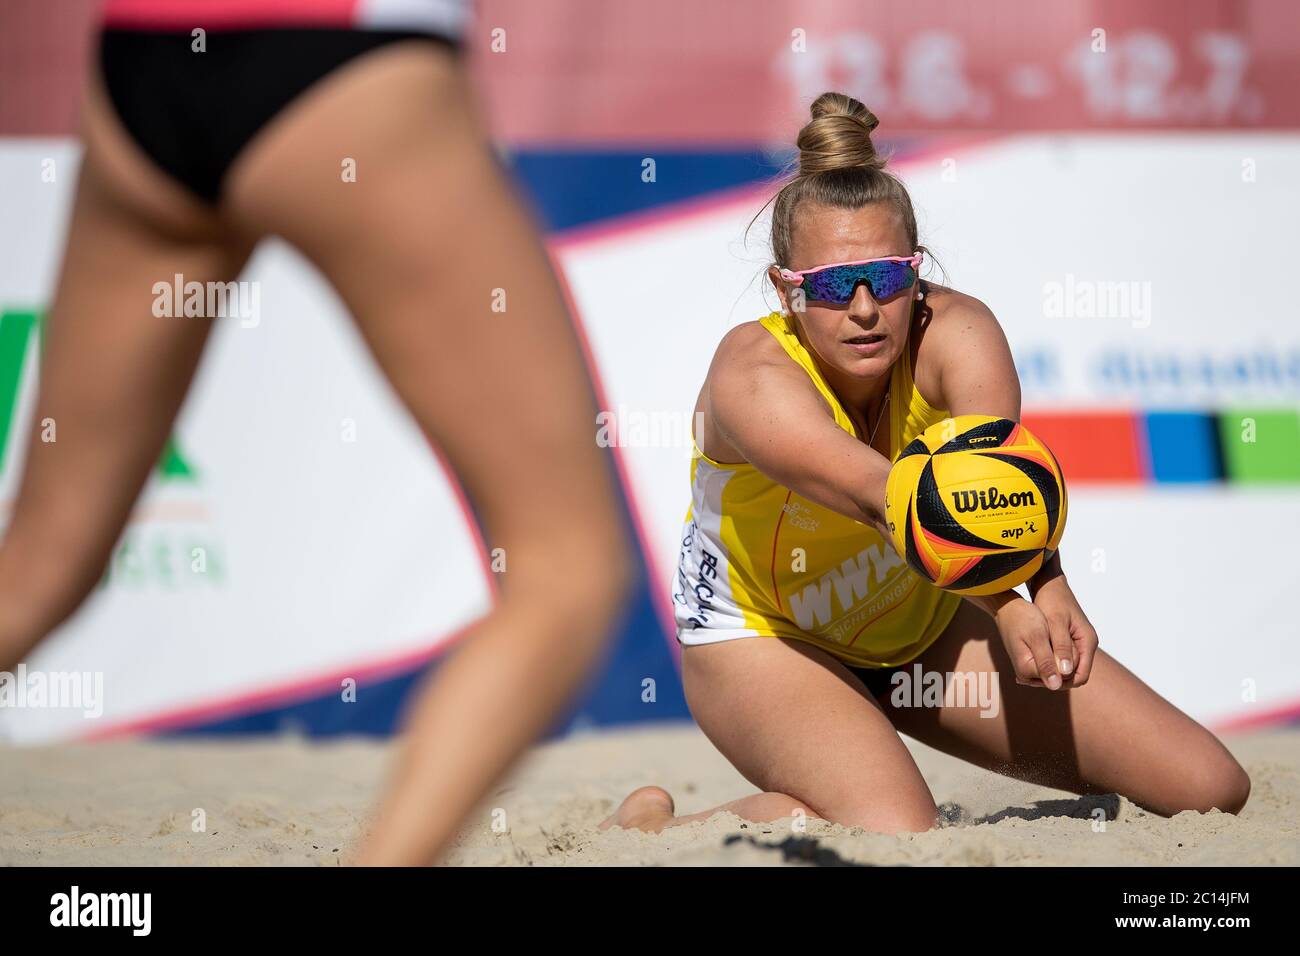 Duesseldorf, Germany. 13th June, 2020. Beach volleyball, beach league, preliminary round, women Overlander/Overlander - Stautz/Welsch